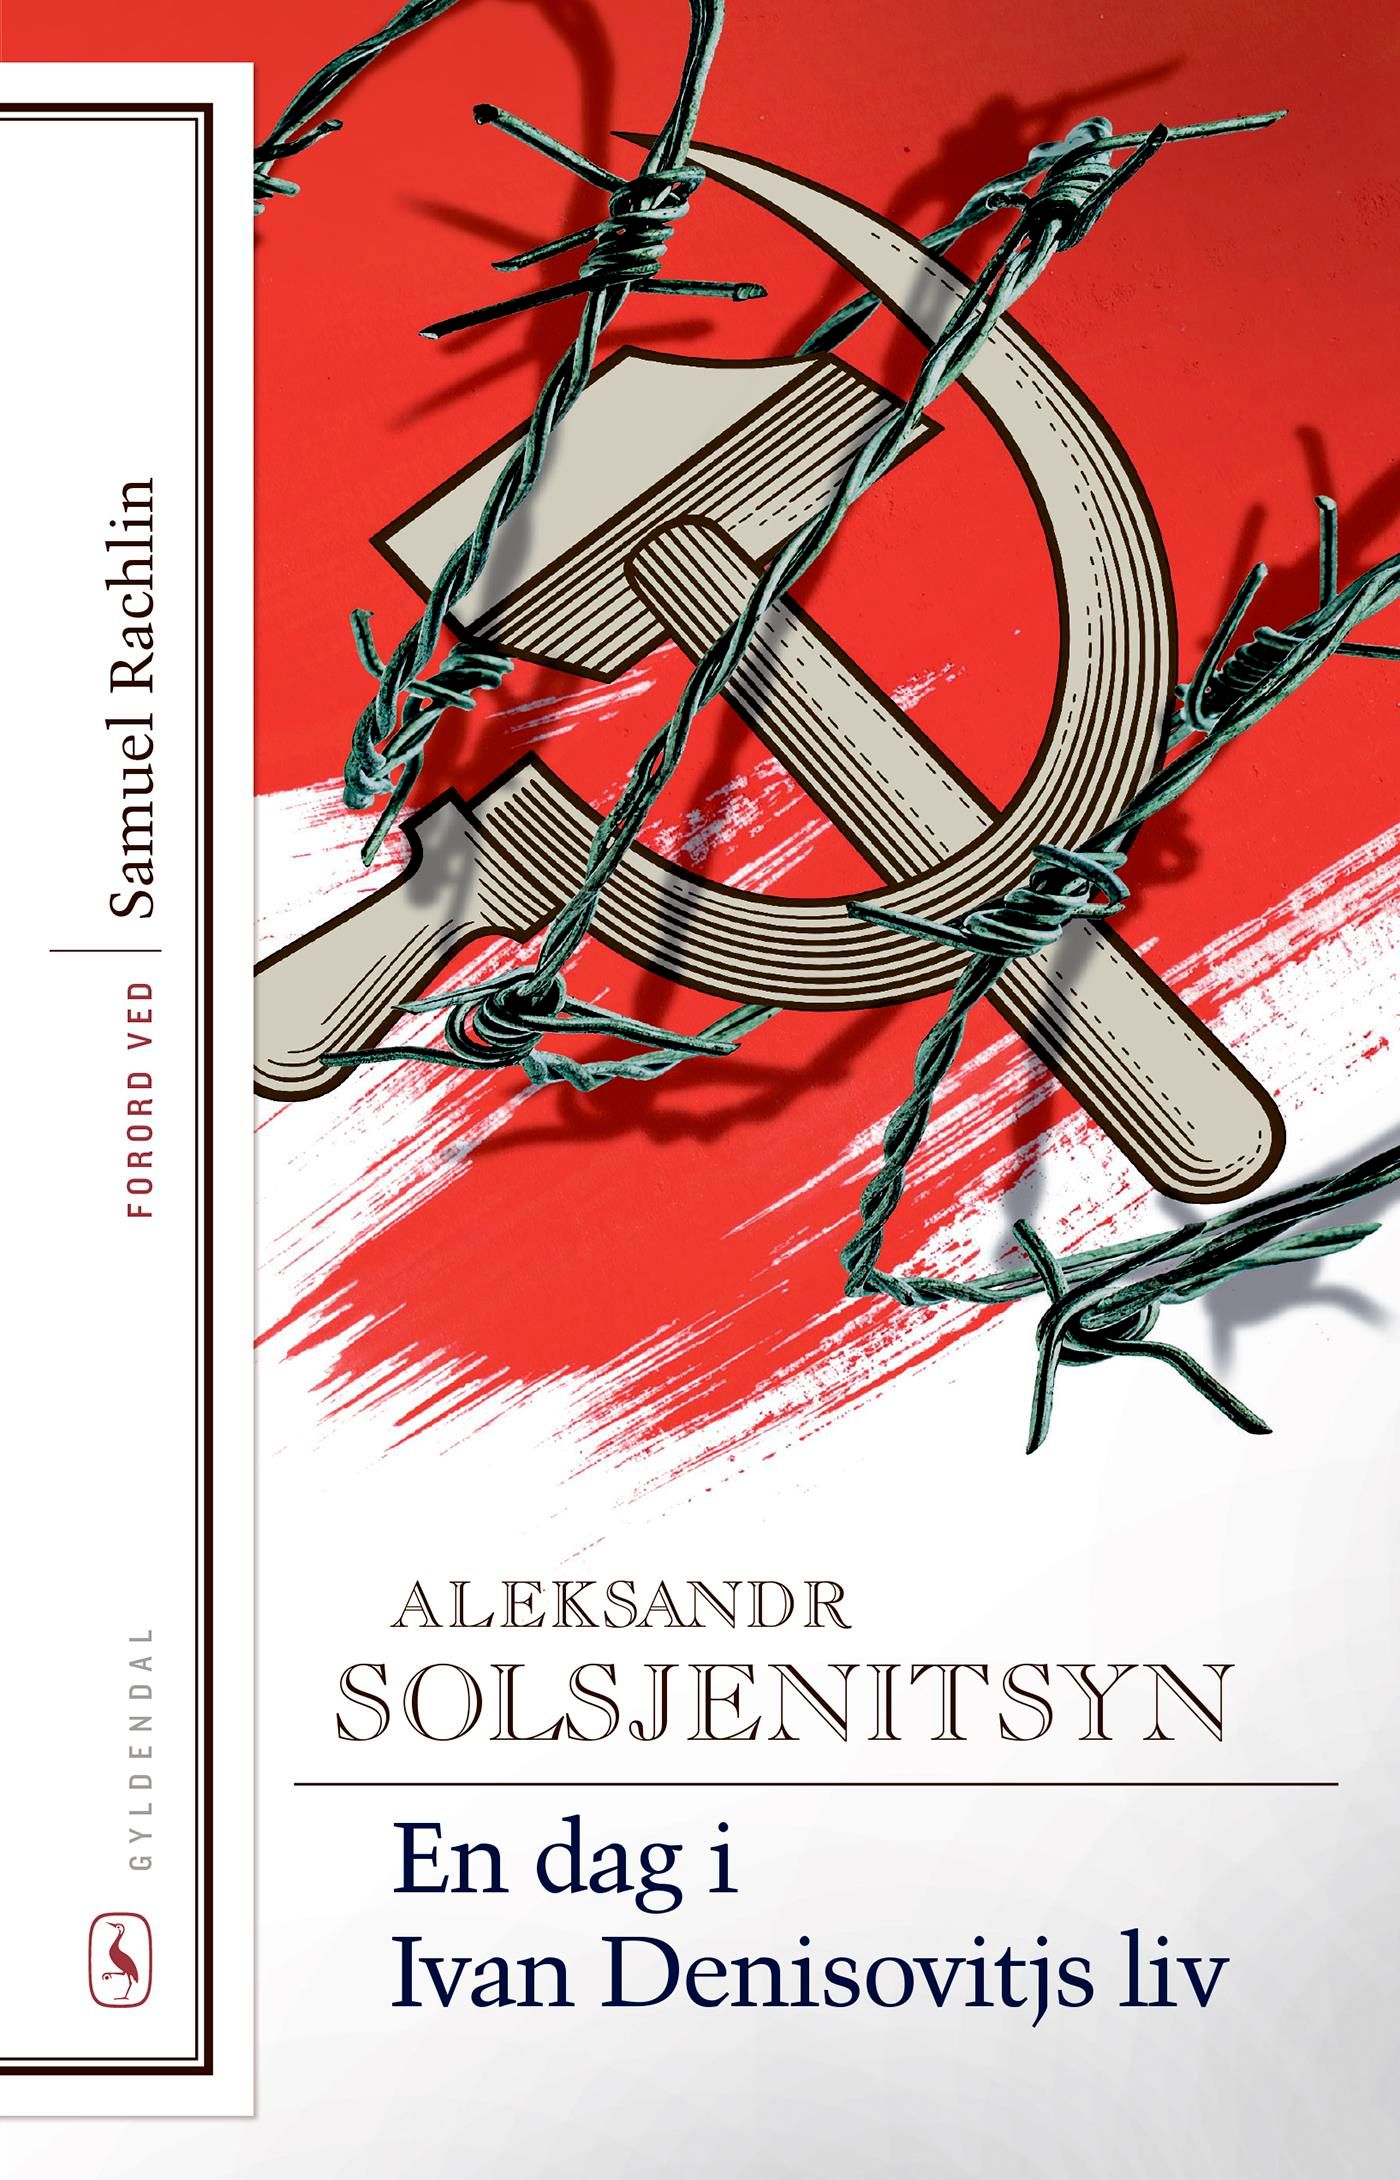 En dag i Ivan Denisovitjs liv, e-bok av Aleksandr Solsjenitsyn